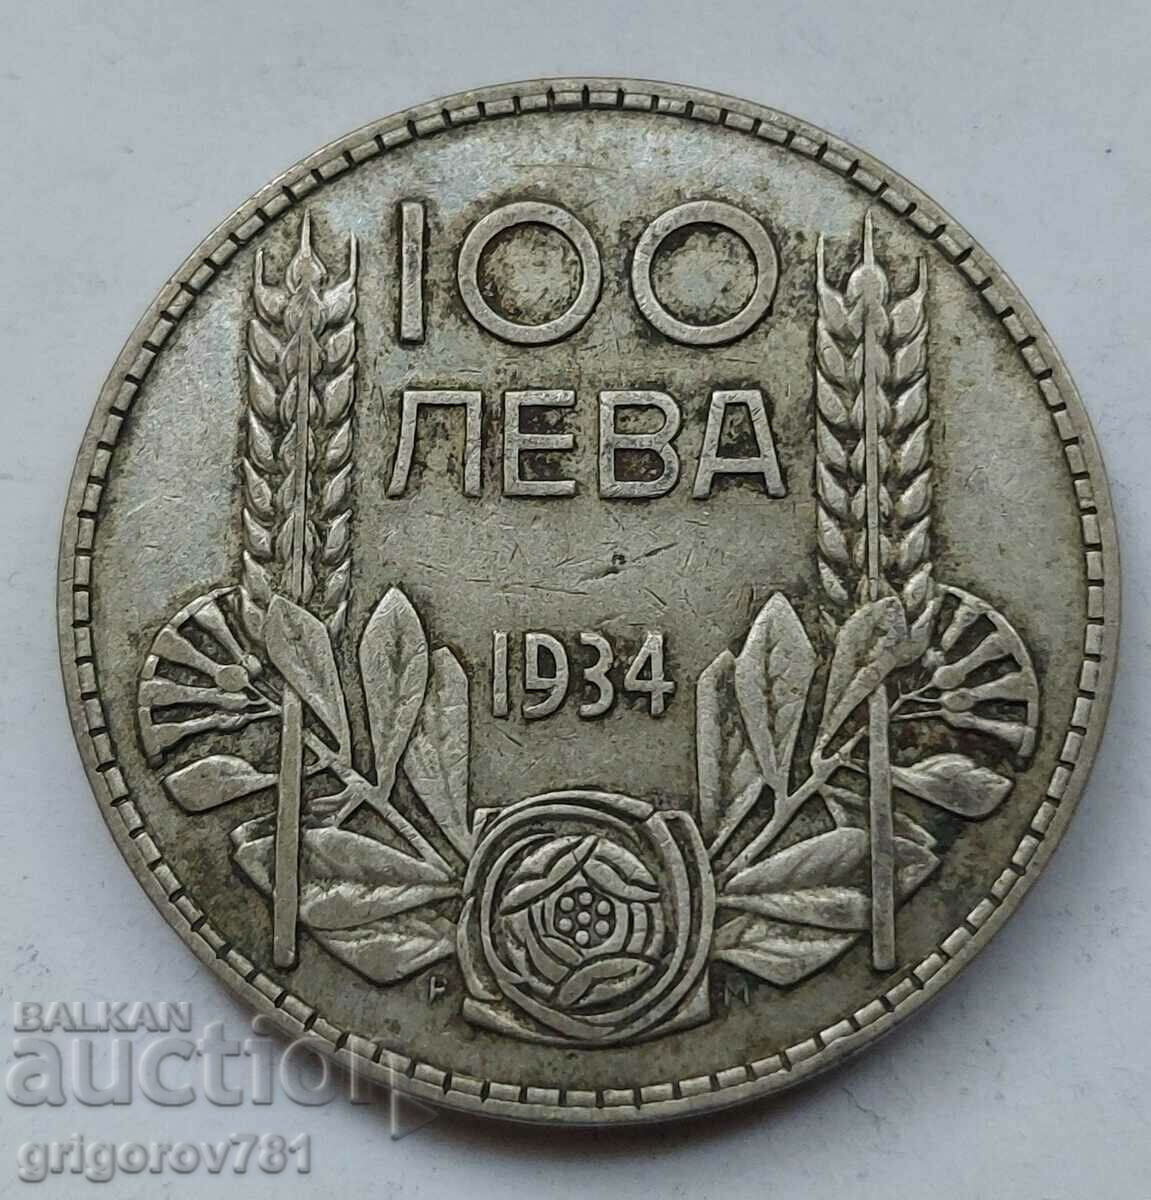 100 leva silver Bulgaria 1934 - silver coin #67